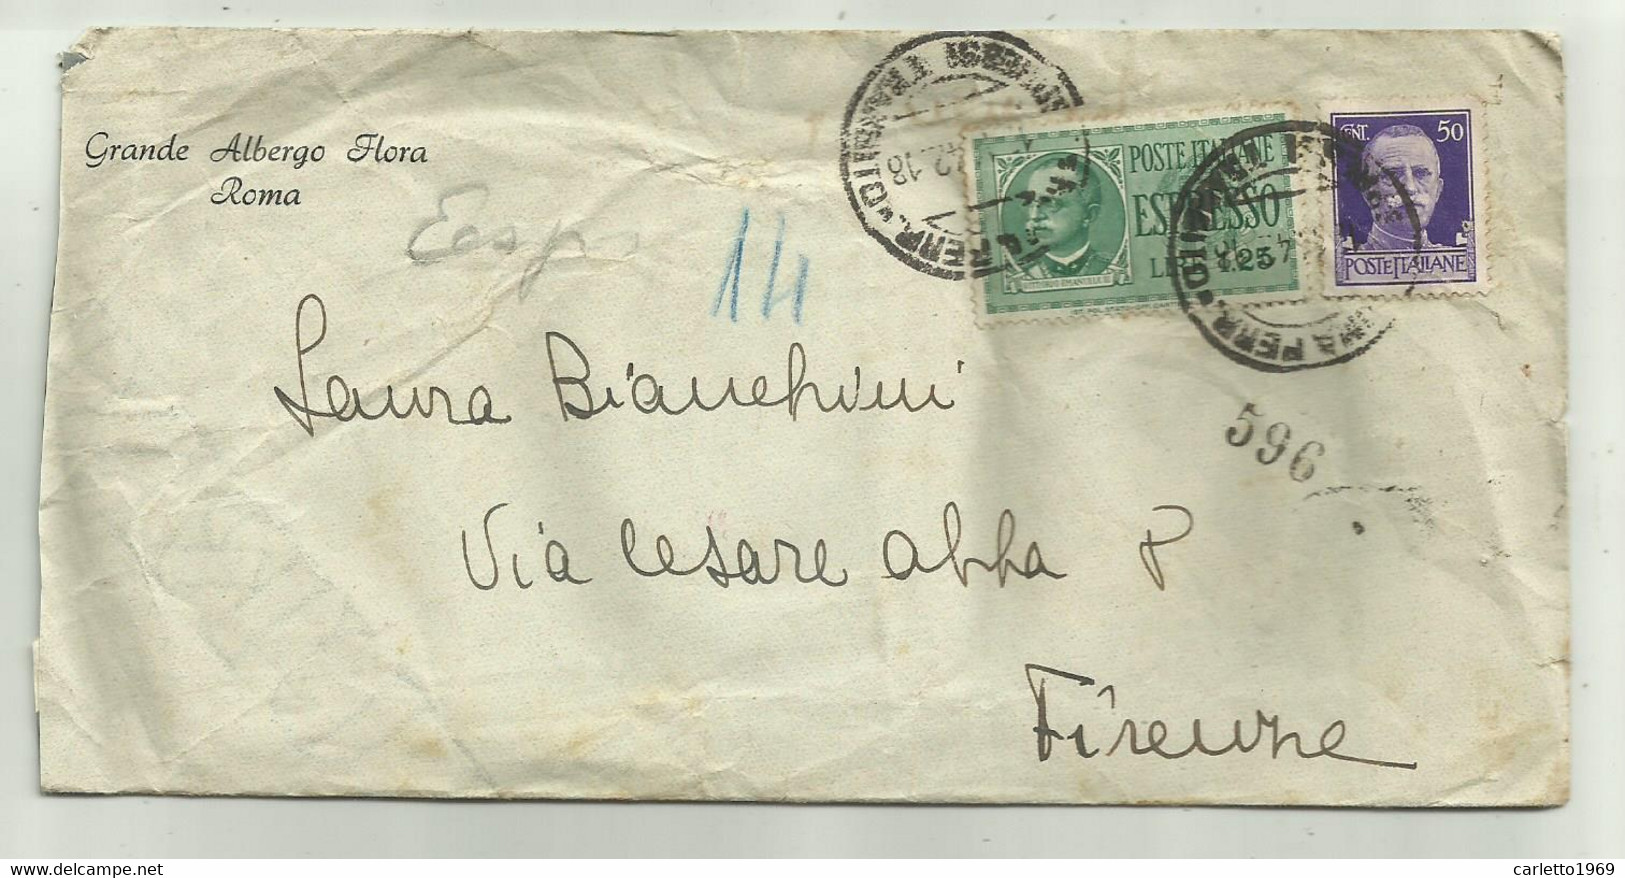 ESPRESSO LIRE 1,25 + CENT. 50 SU BUSTA GRANDE ALBERGO FLORA ROMA 1942 - Usati